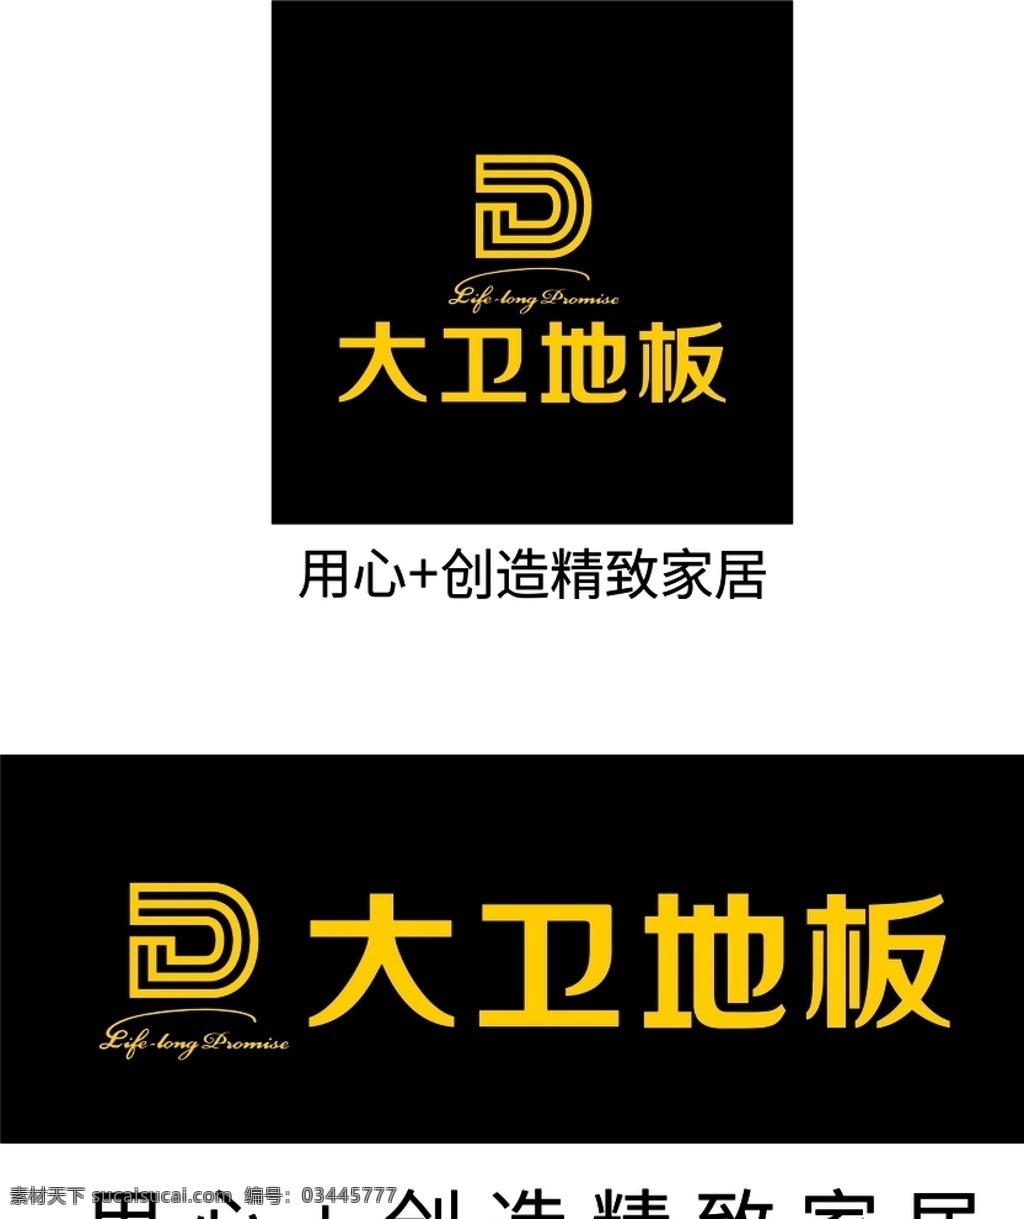 大卫地板 大卫 地板 logo 黑色 黄色 标志图标 企业 标志